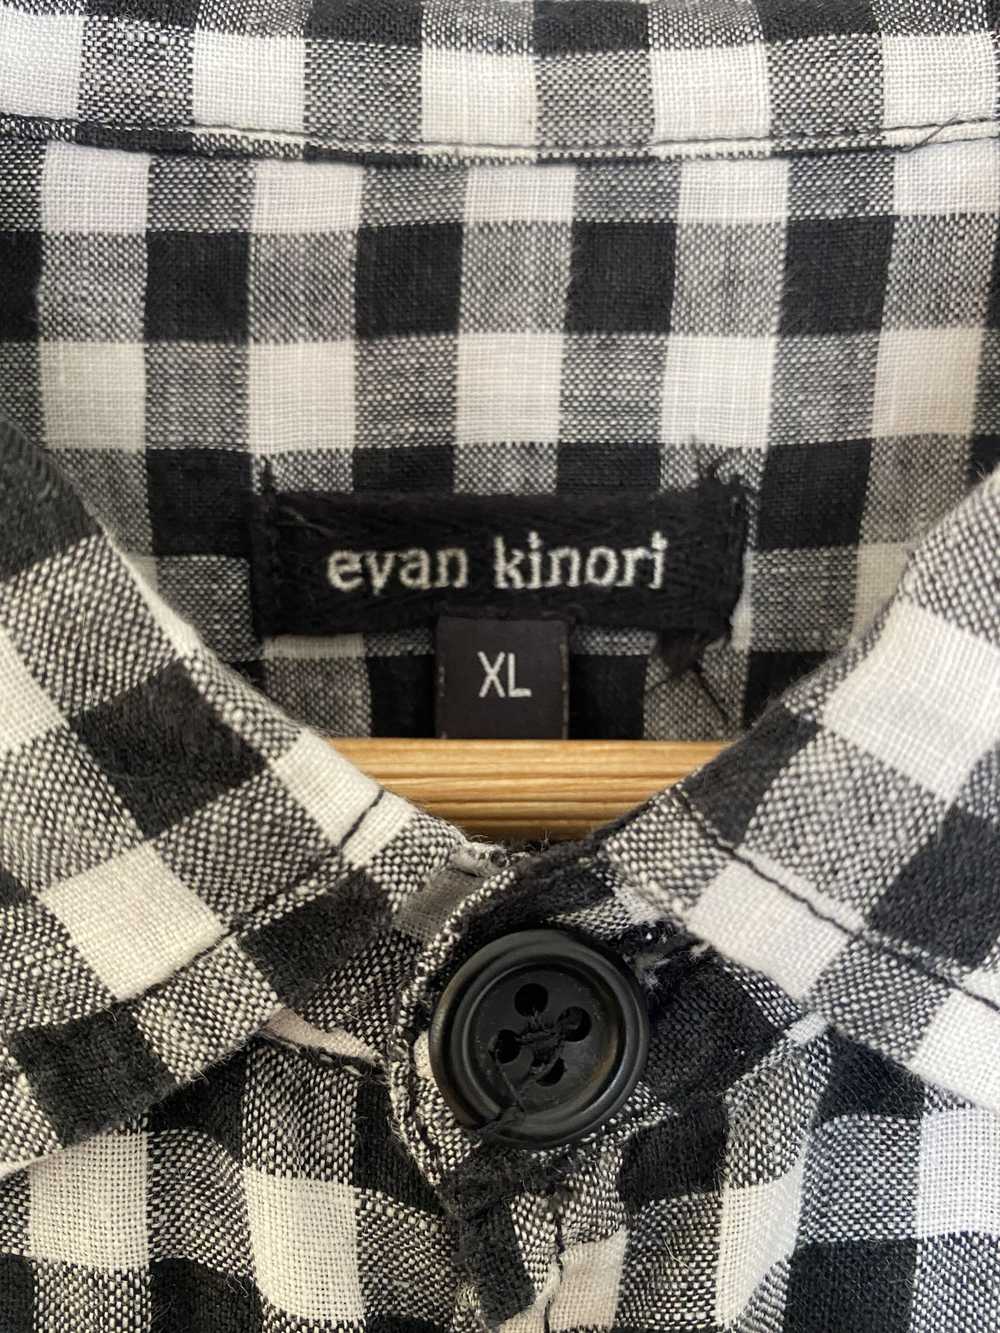 Evan Kinori Two Pocket Shirt - Linen Gingham - image 3